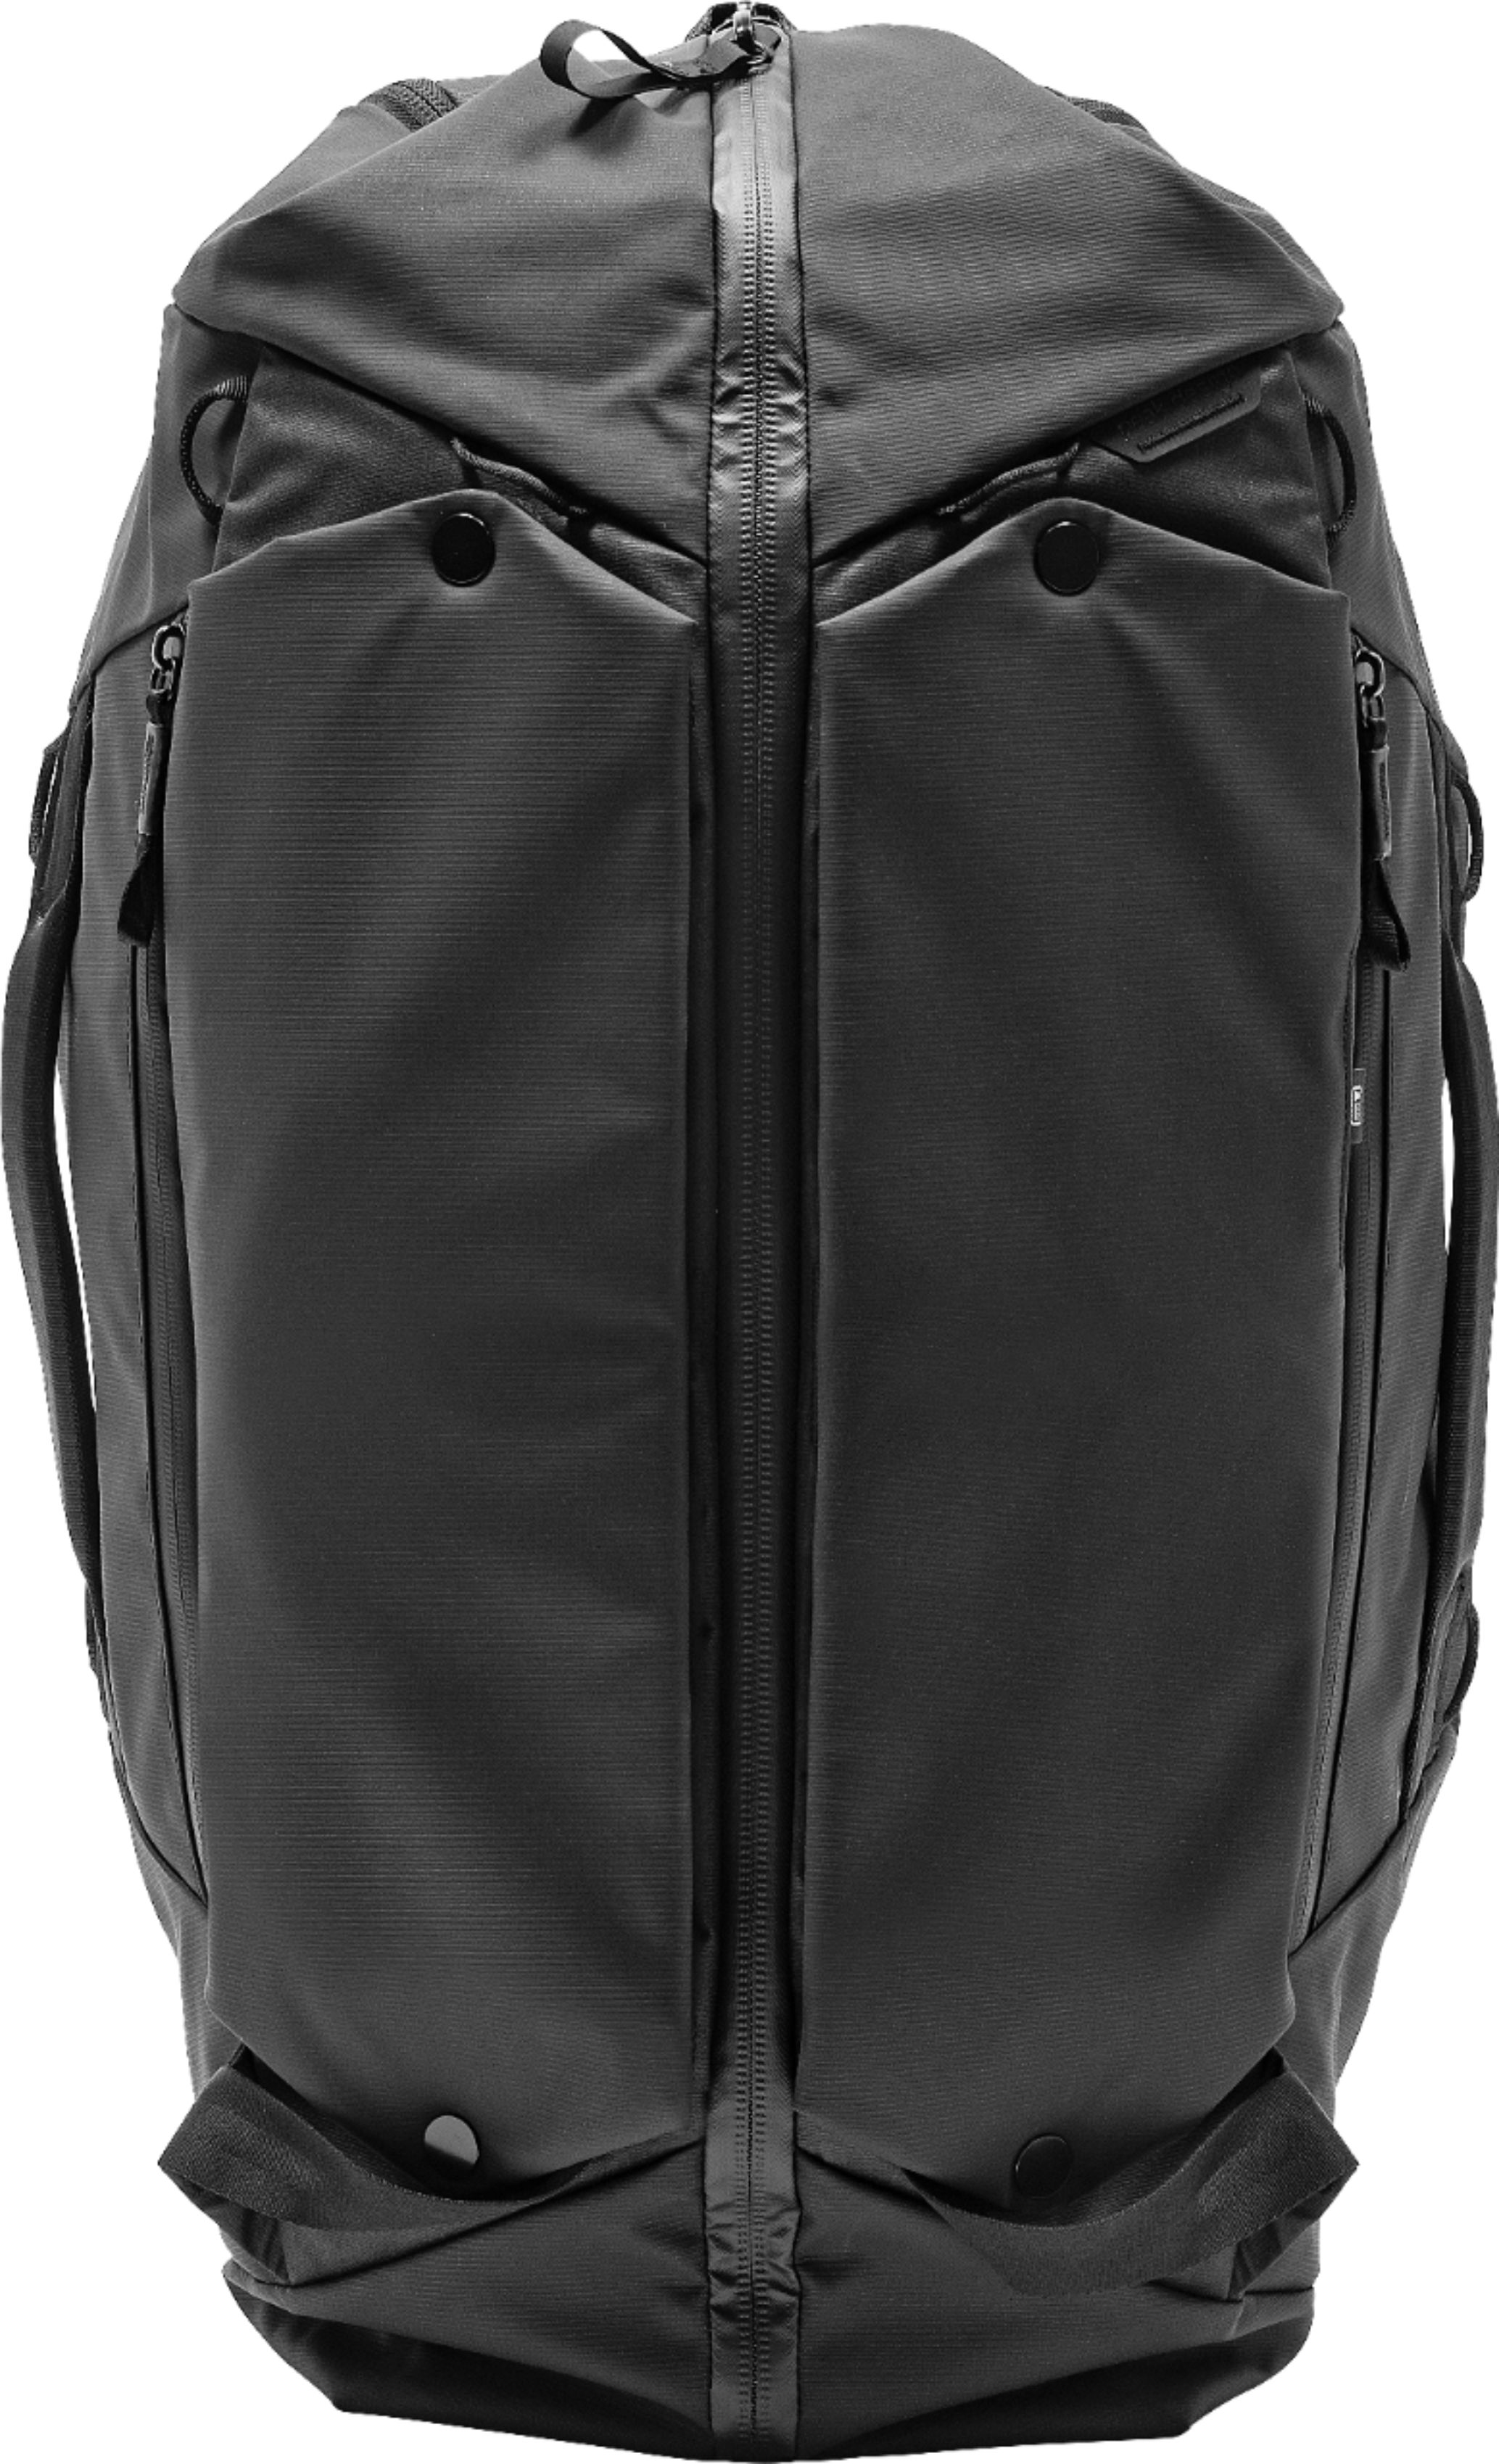 Peak Design Travel Duffelpack Black BTRDP-65-BK-1 - Best Buy